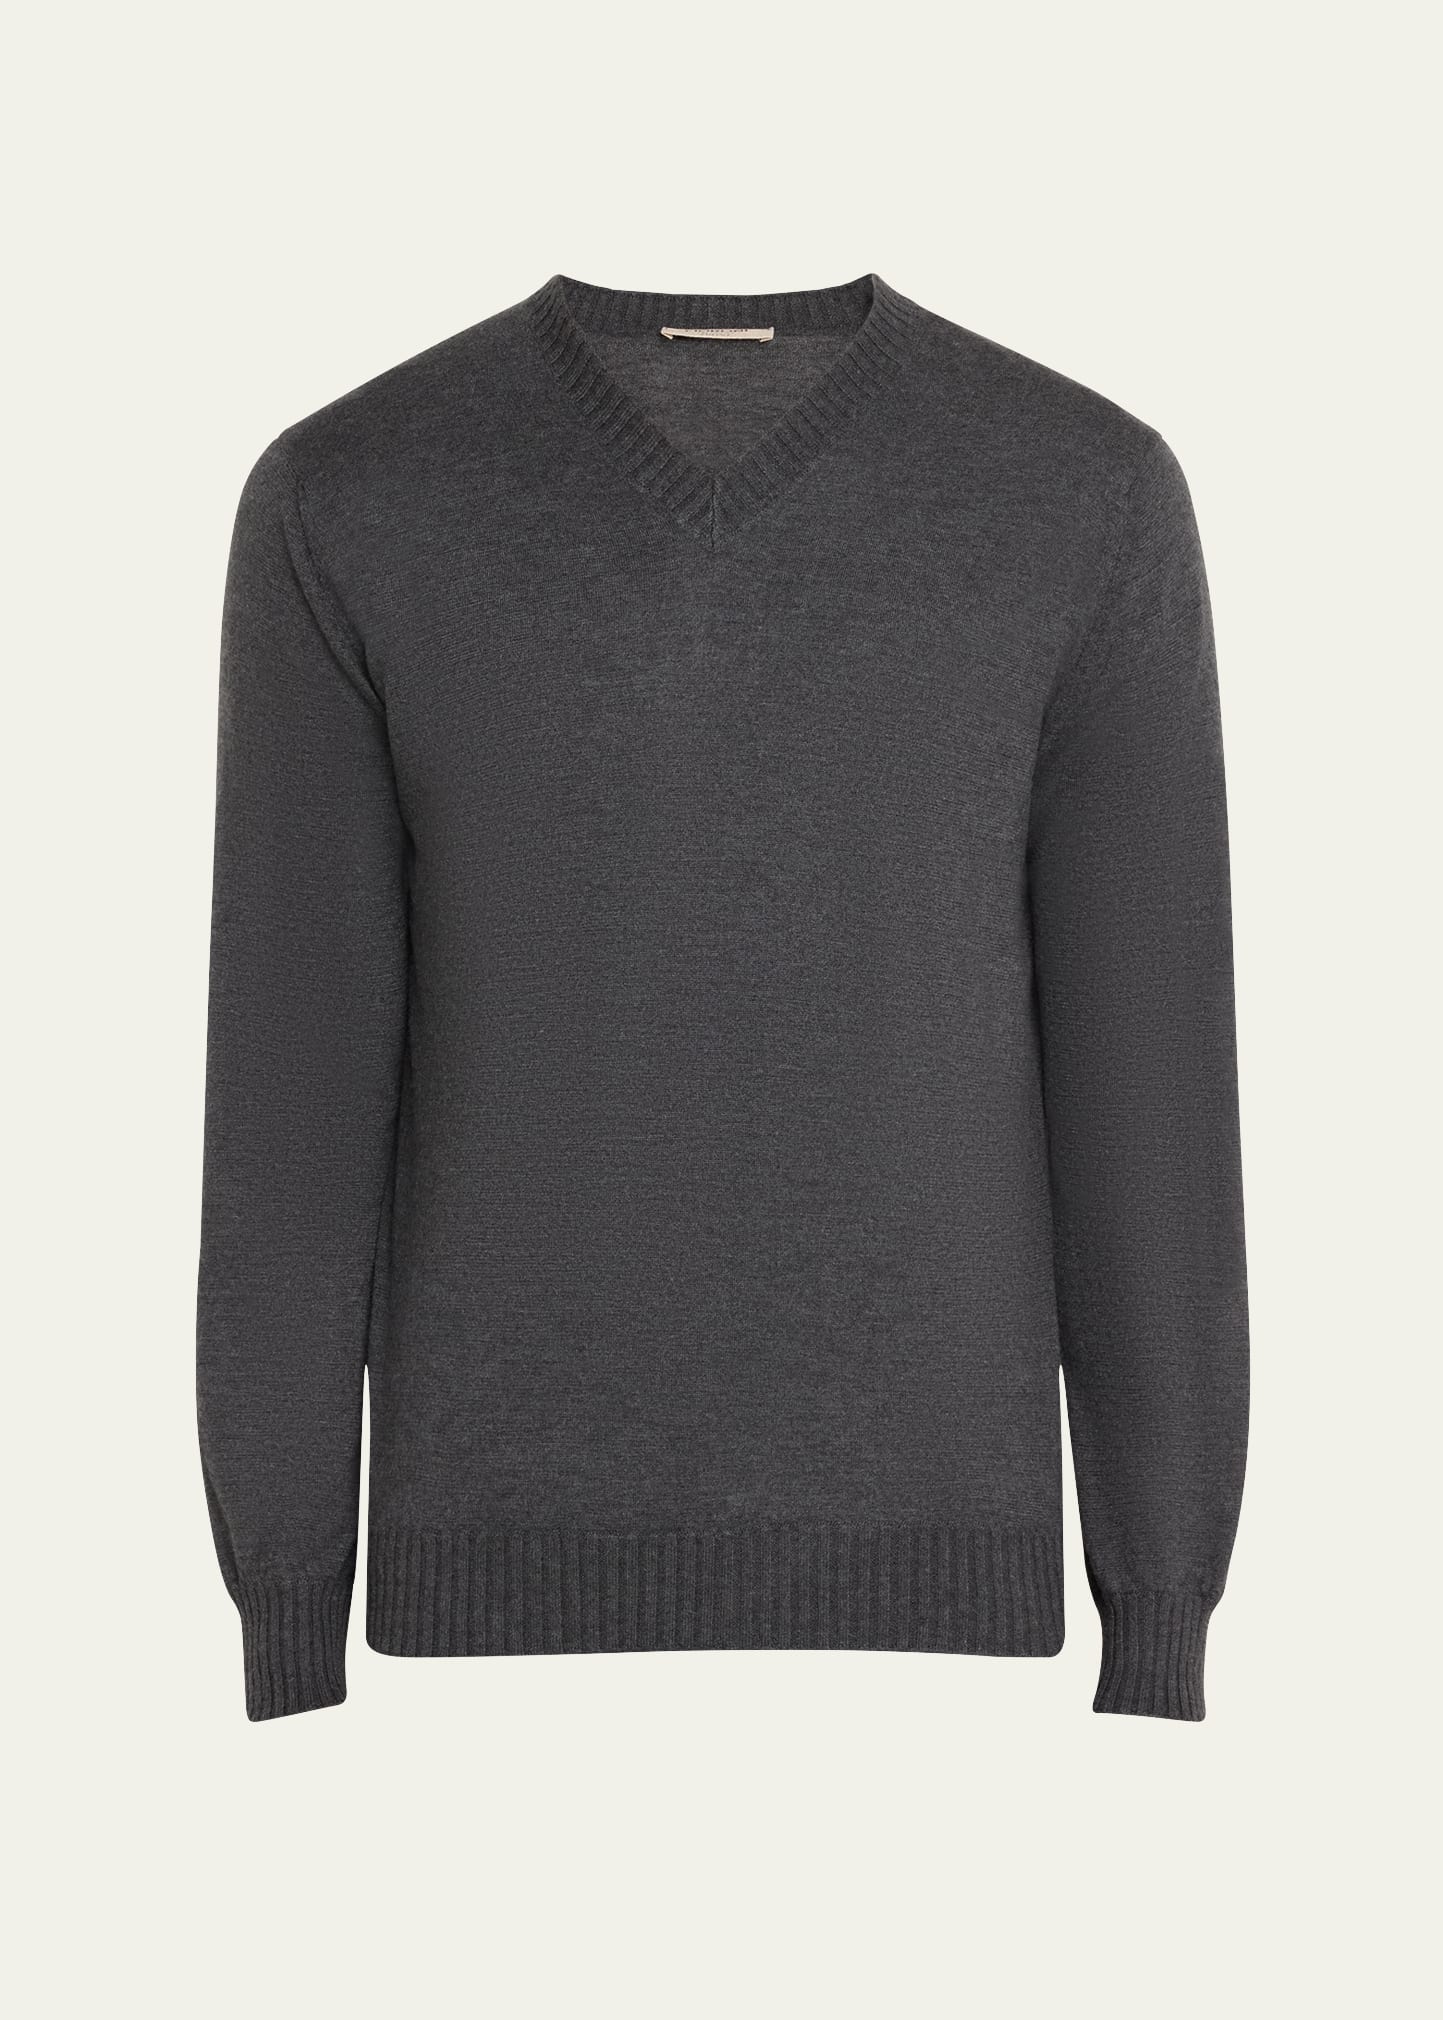 Men's Duvet Cashmere High V-Neck Sweater